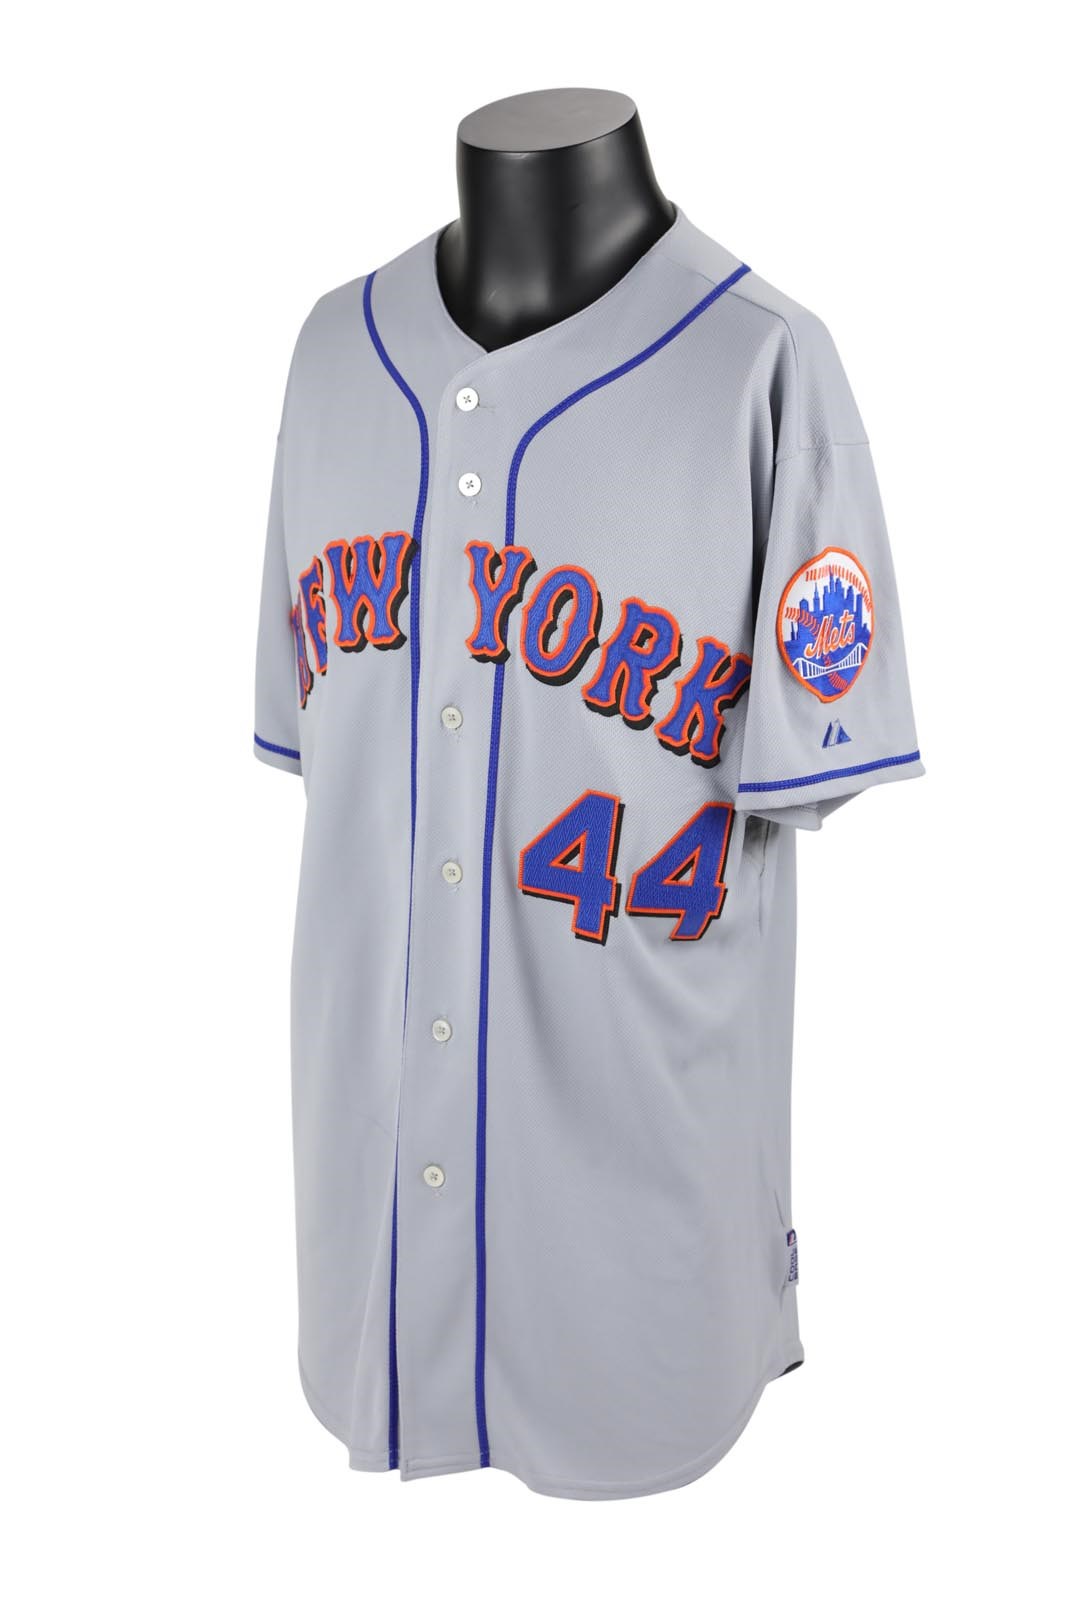 - 2008 Brady Clark New York Mets Game Worn Jersey (Mets Certified)